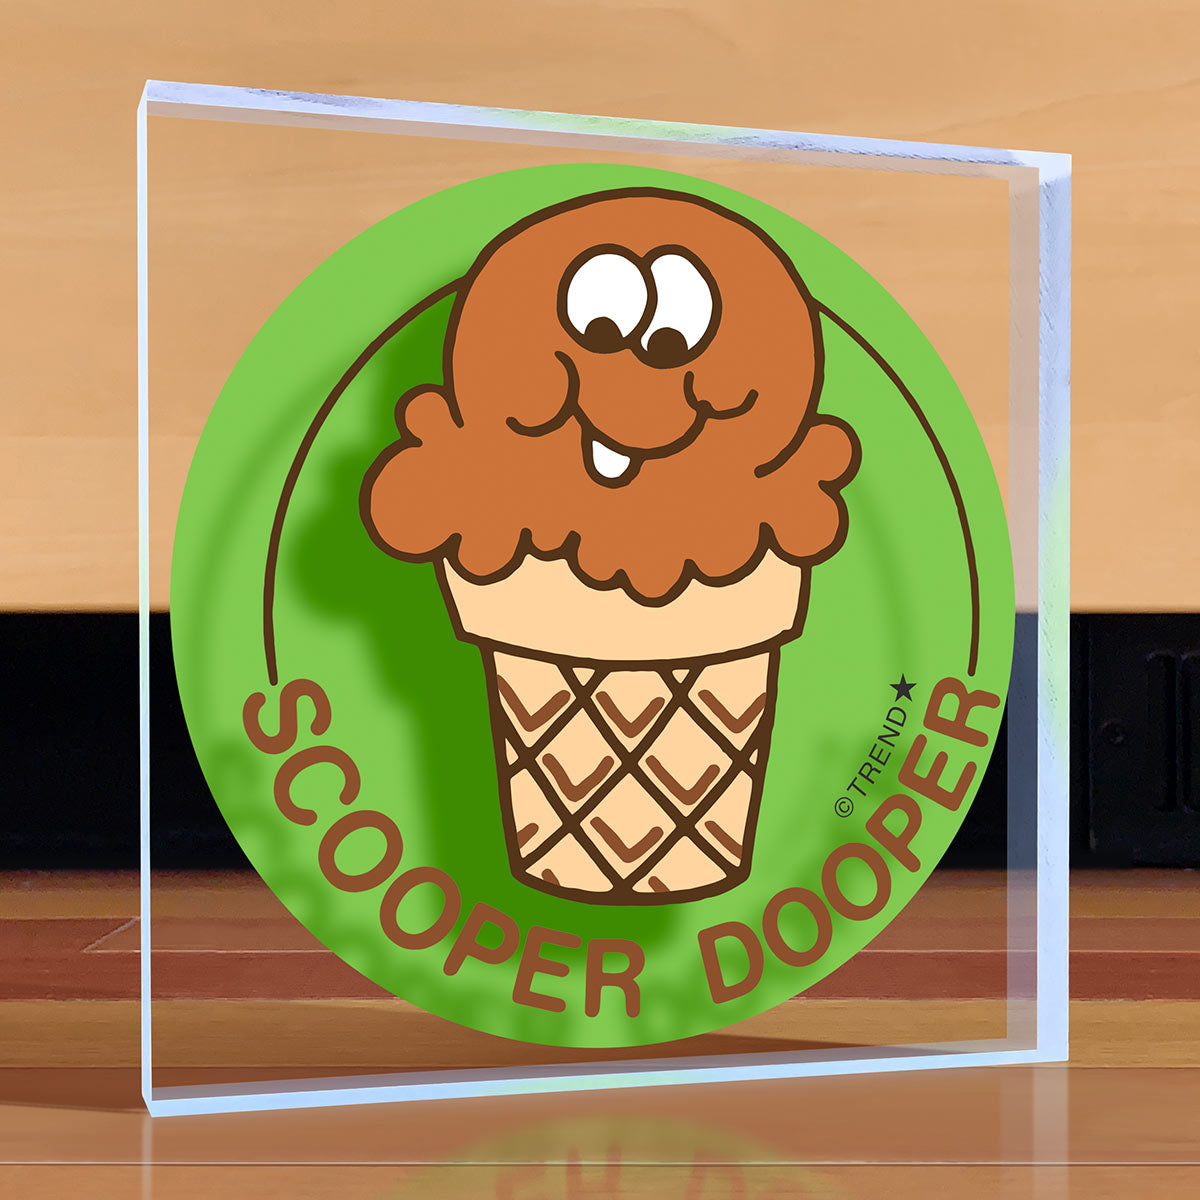 Scooper Dooper Desktop Art